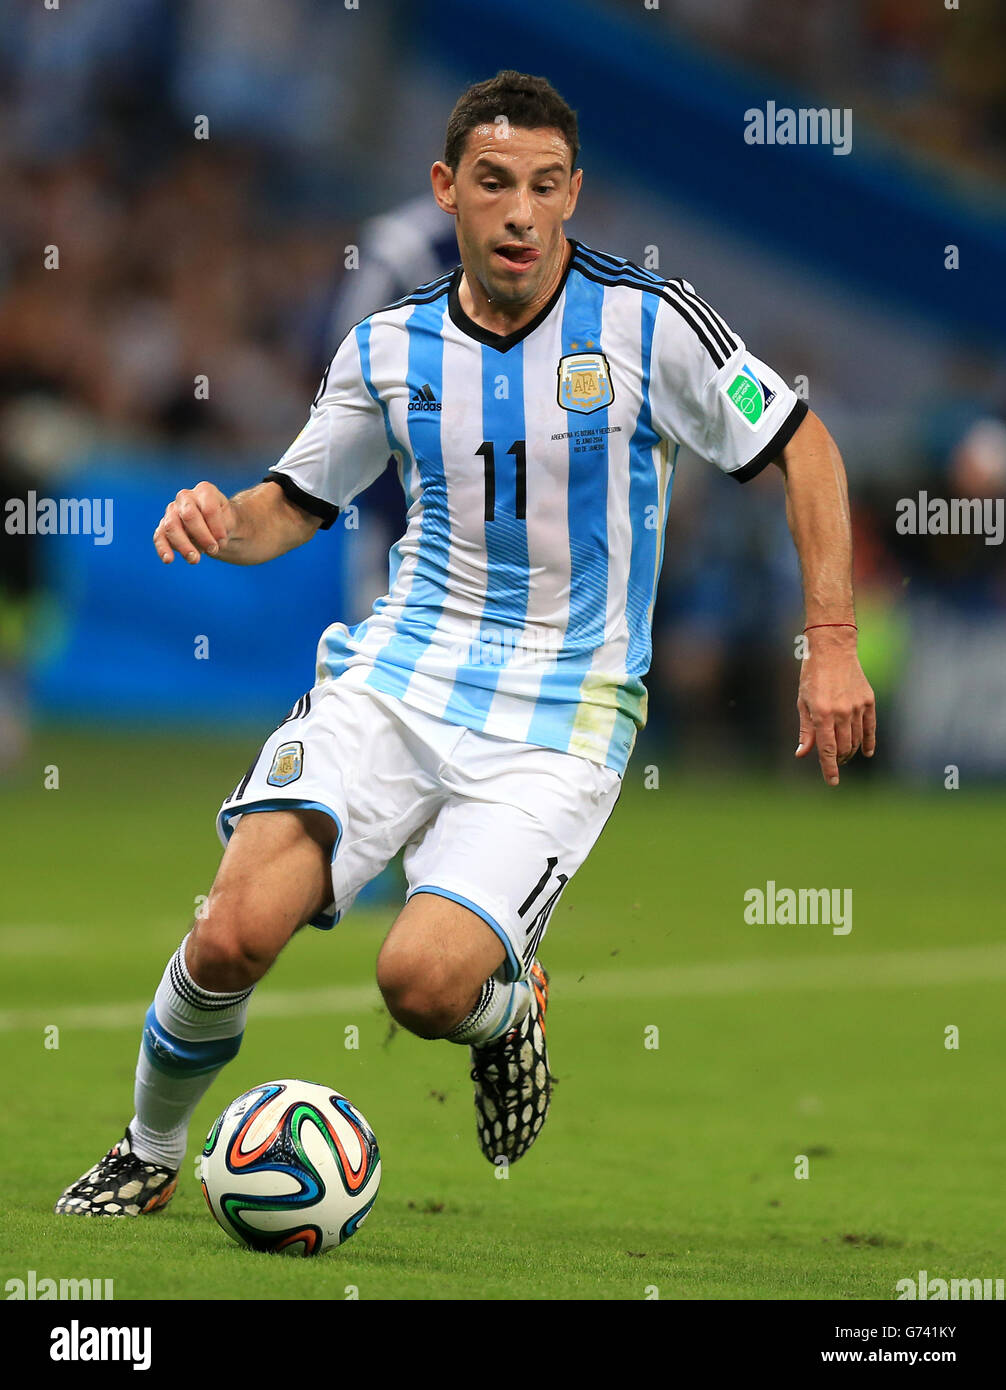 Soccer - FIFA World Cup 2014 - Group F - Argentina v Bosnia and Herzegovina - Maracana. Argentina's Maxi Rodriguez Stock Photo